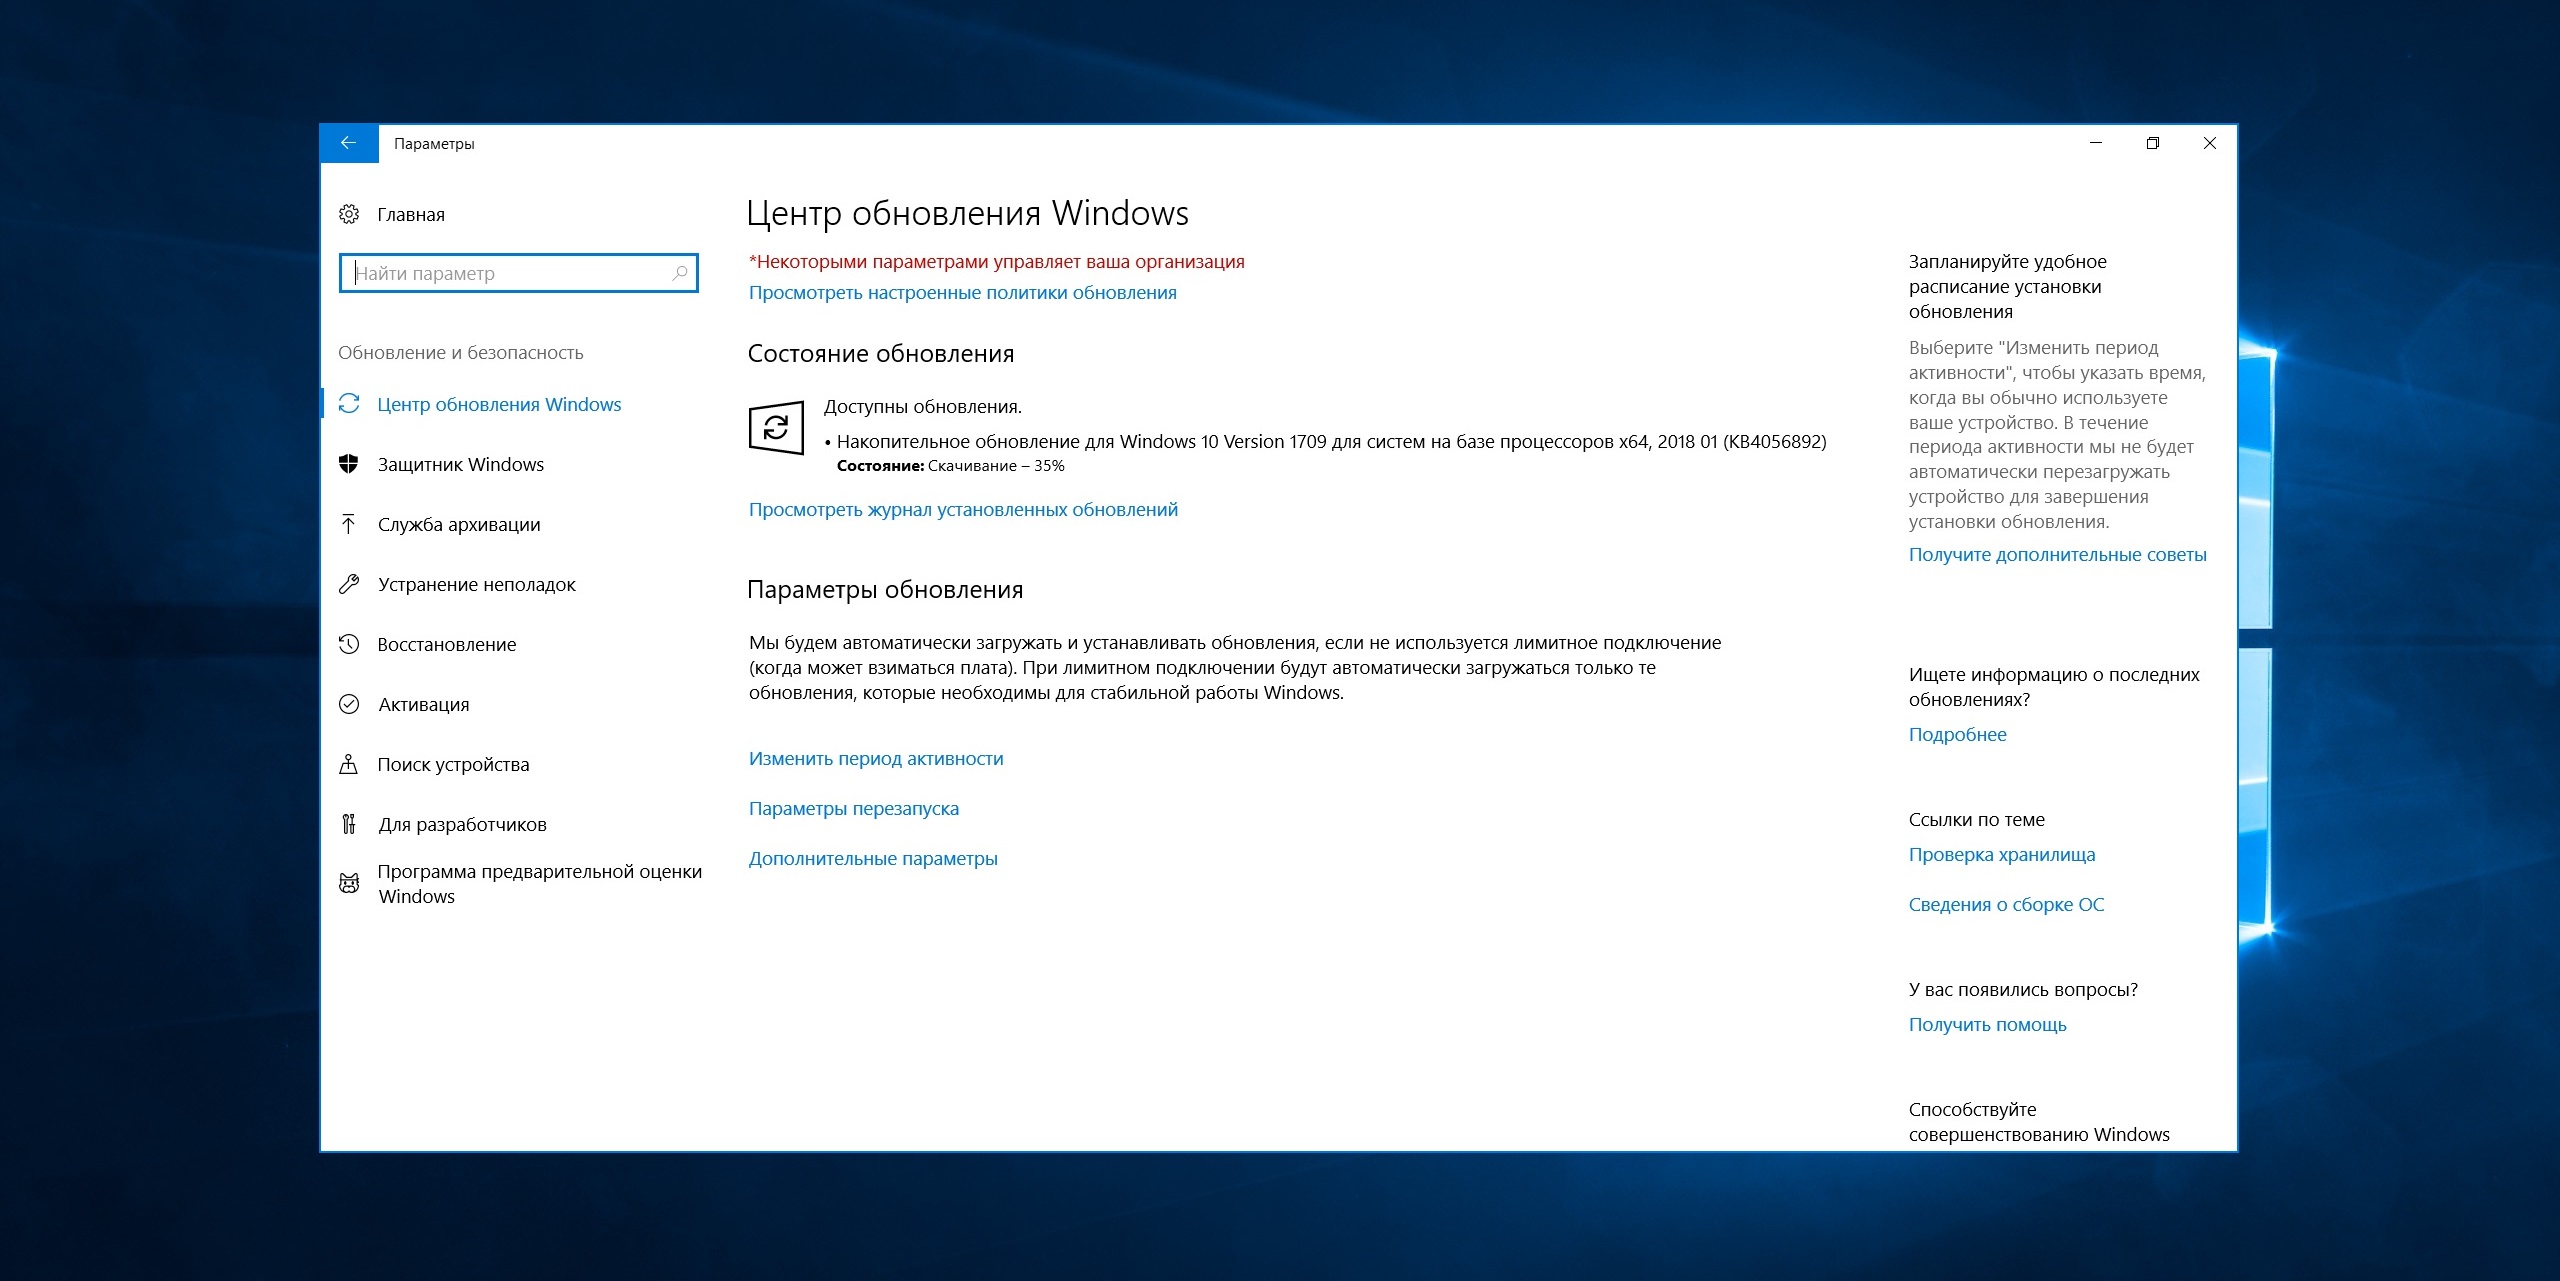 Доступно обновление Windows 10 сборка 16299.192